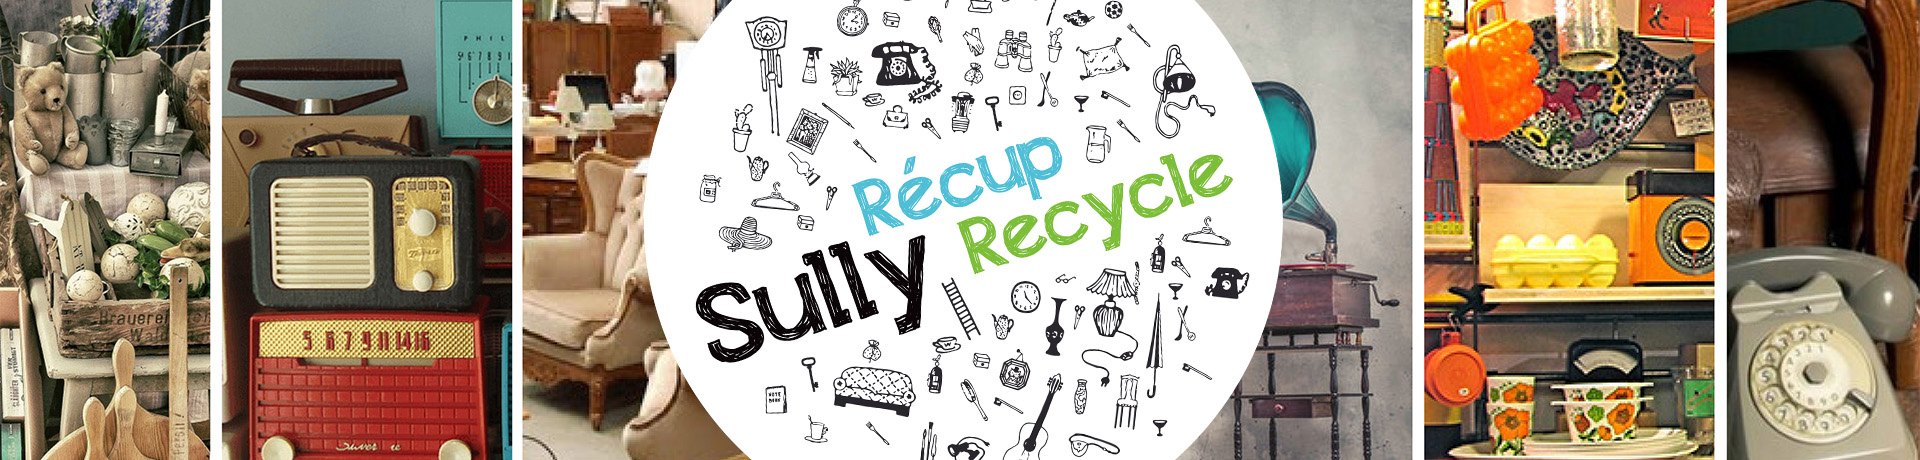 Sully Récup Recycle, une ressourcerie et un café associatif en Val de Sully